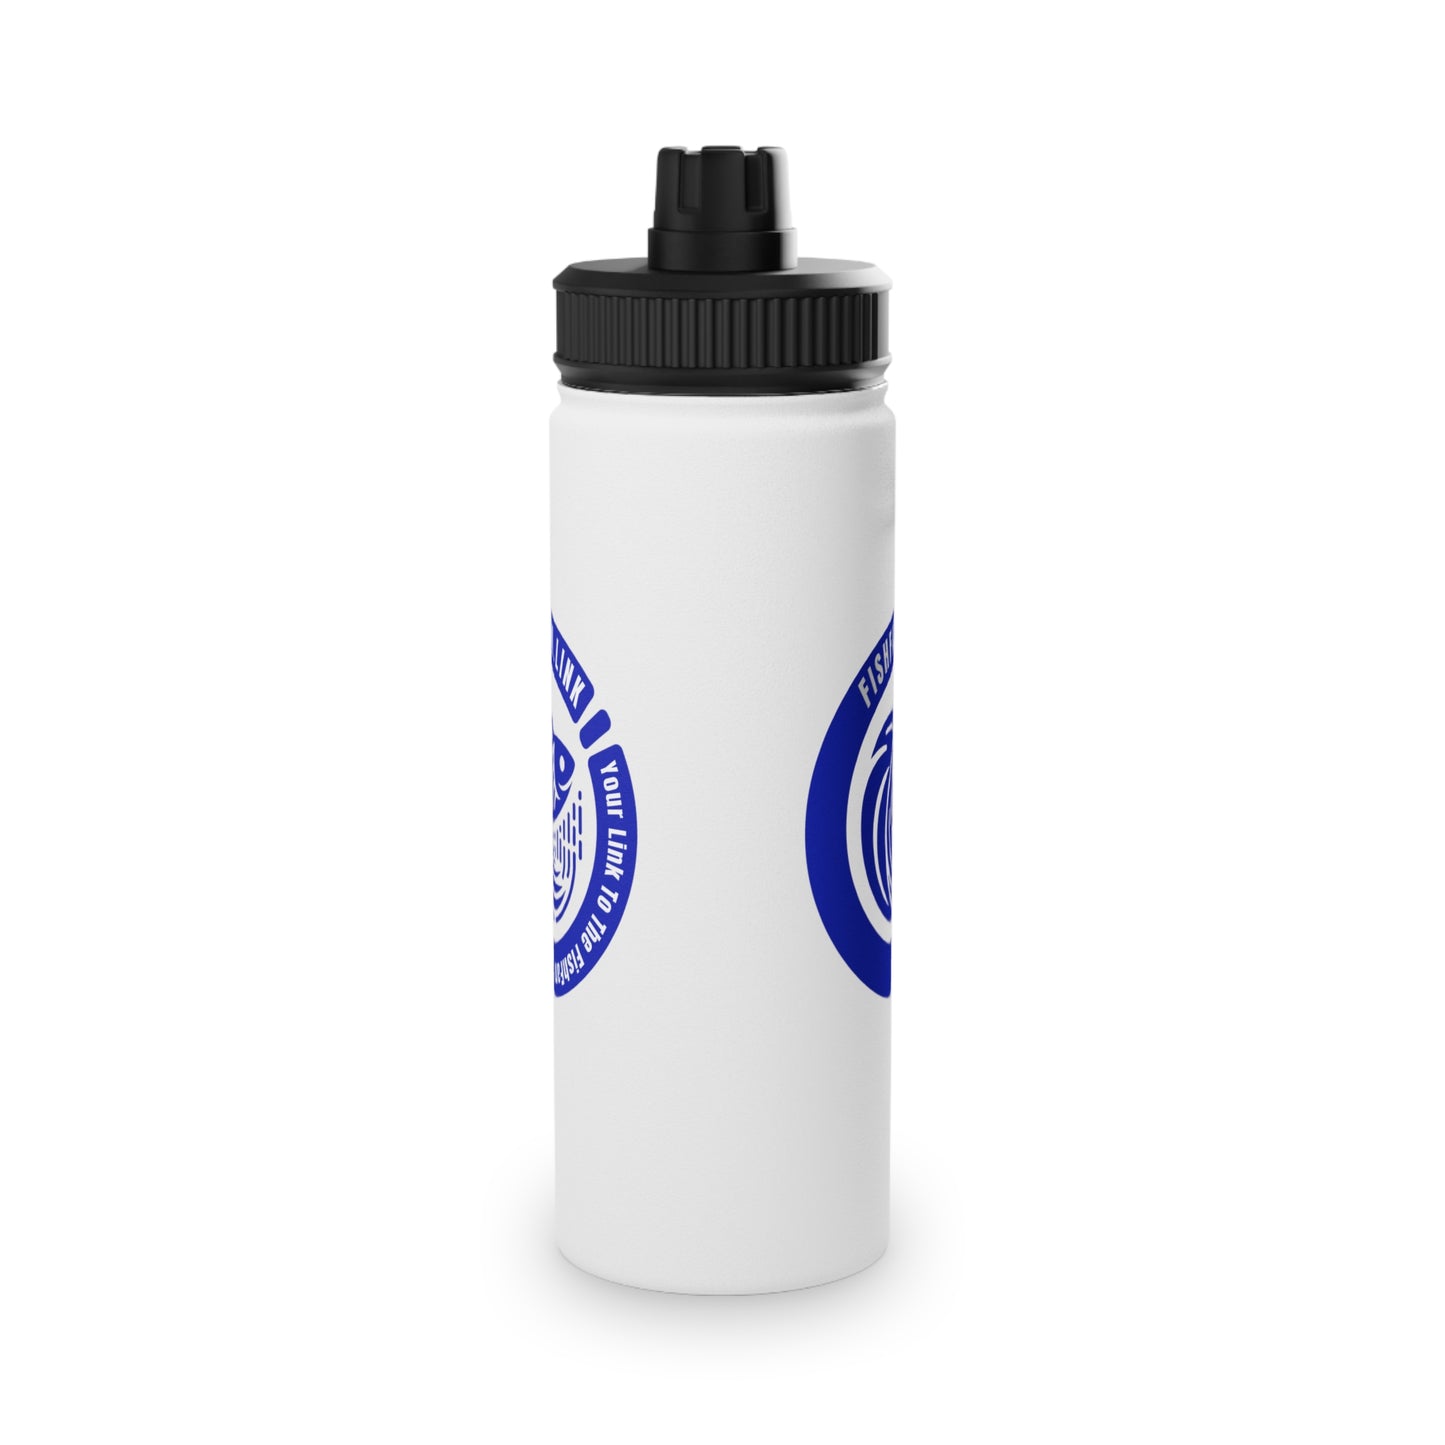 FishFamLink Stainless Steel Water Bottle, Sports Lid